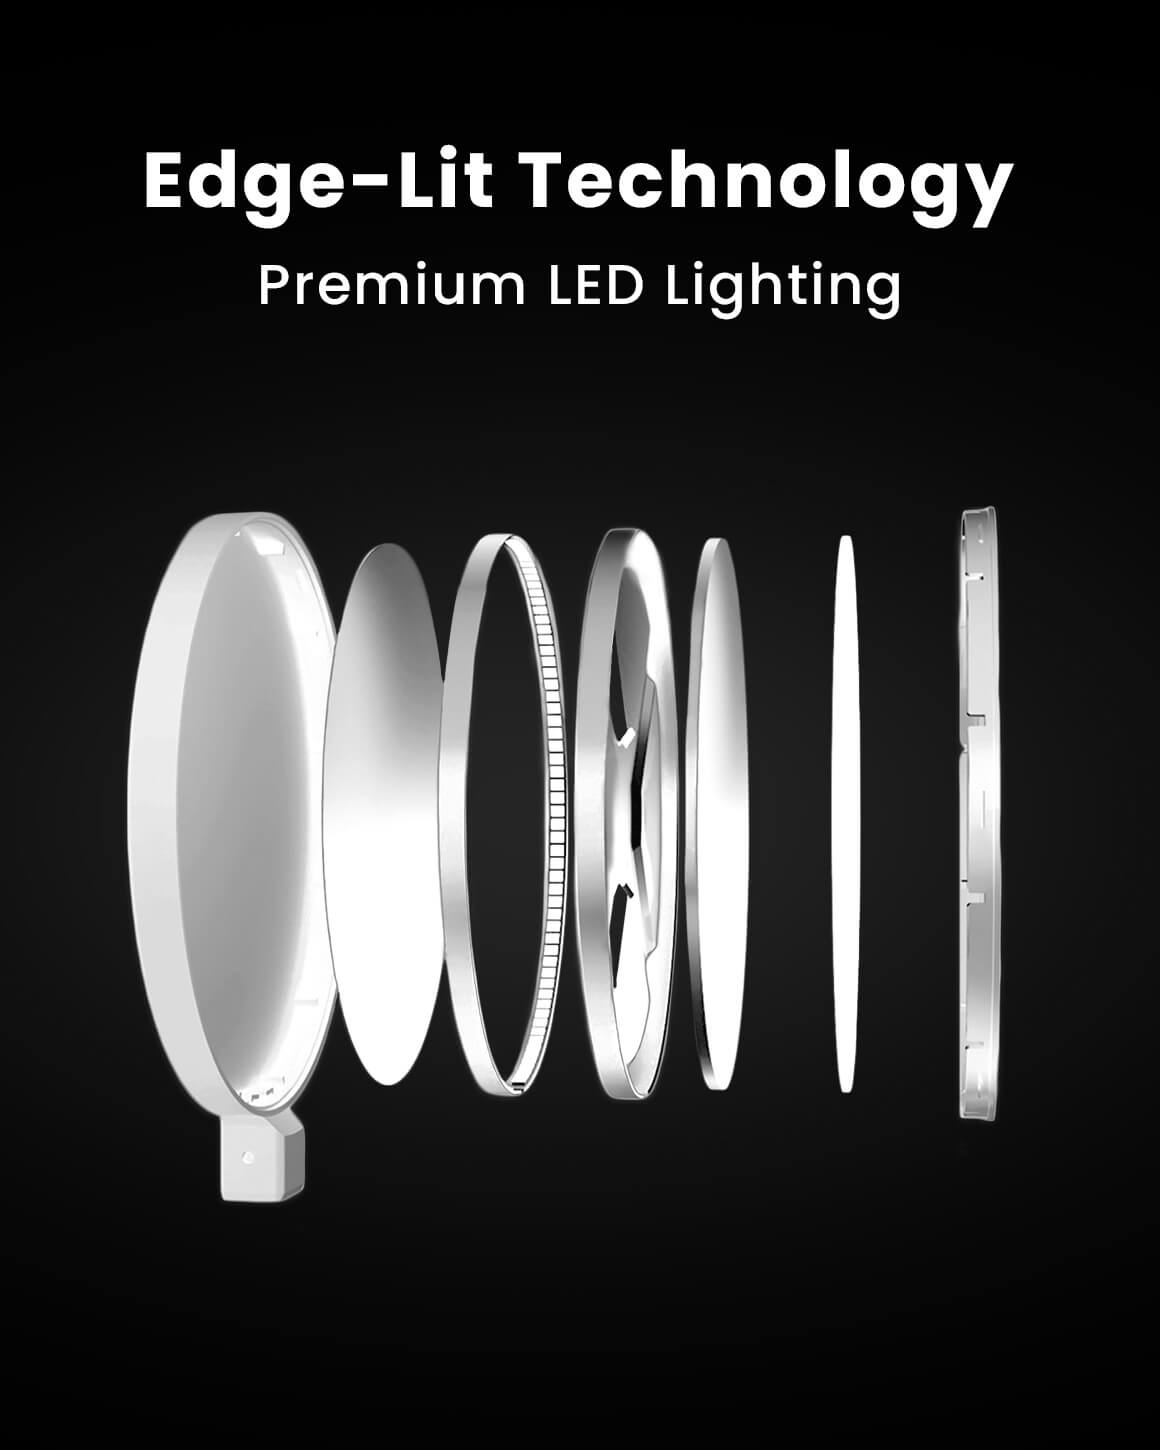 Edge Light 2.0 White 2-Pack LED Desk Lamps